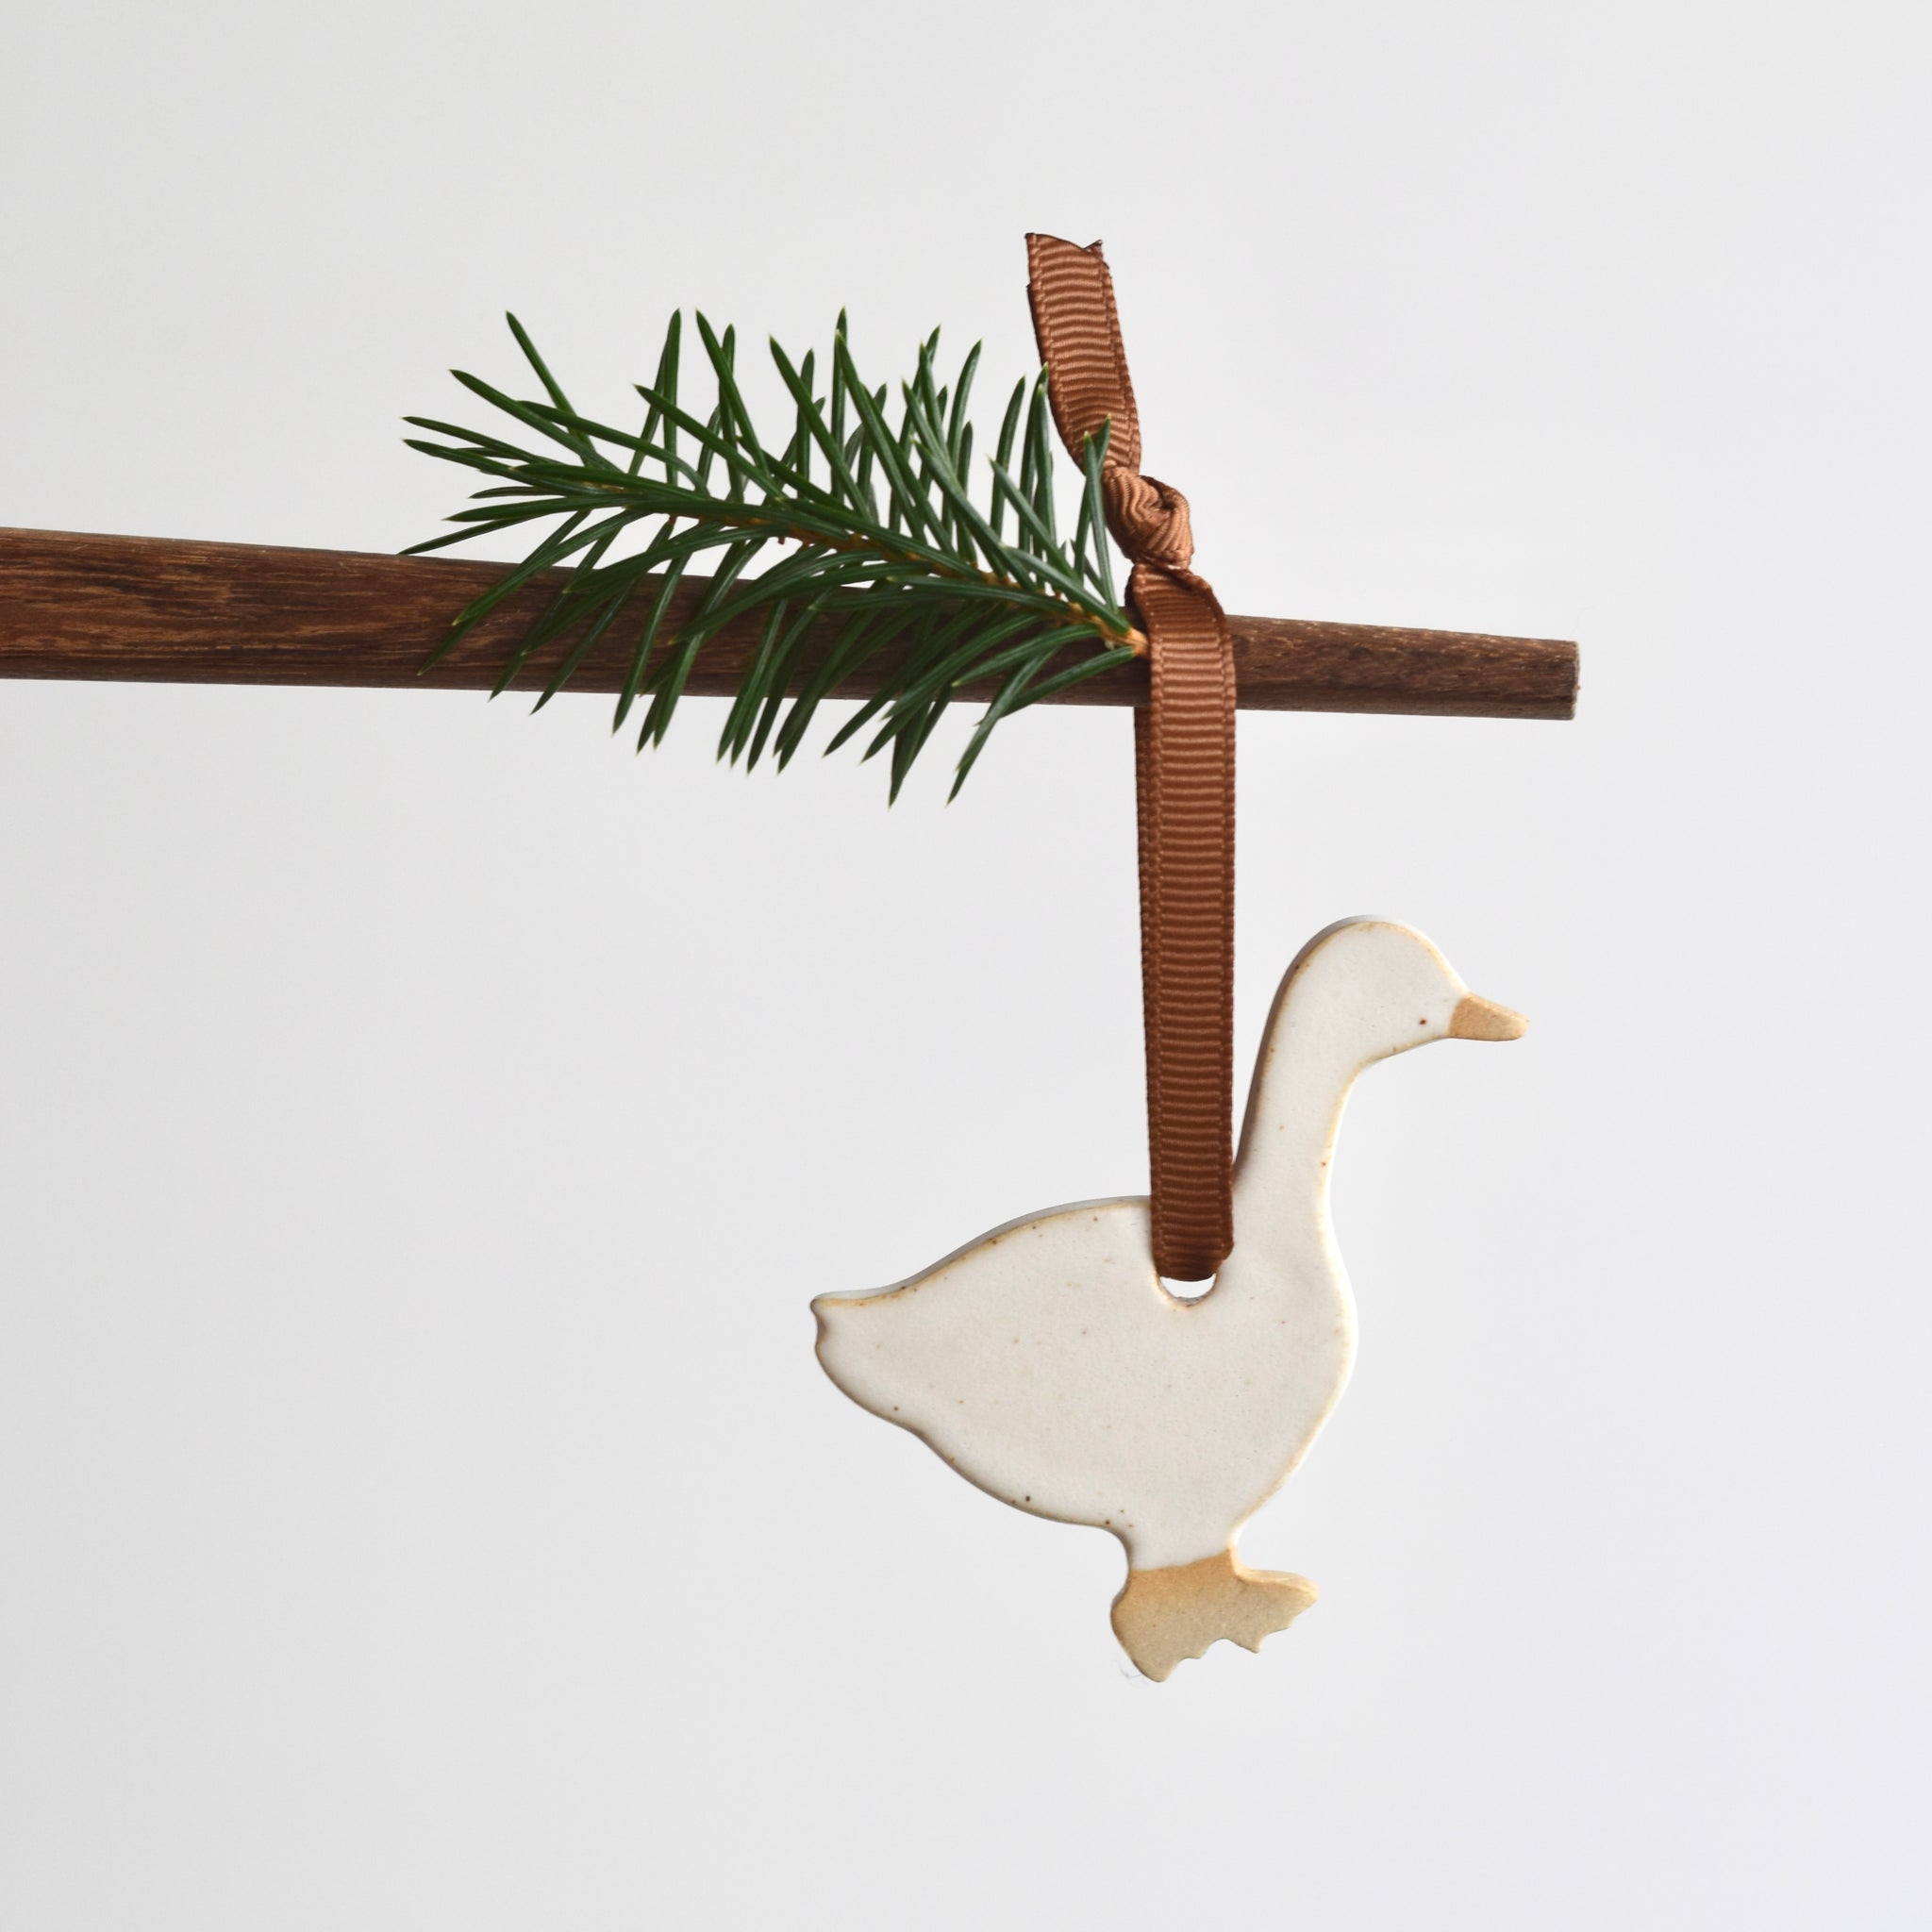 Christmas Ornament - Christmas Goose